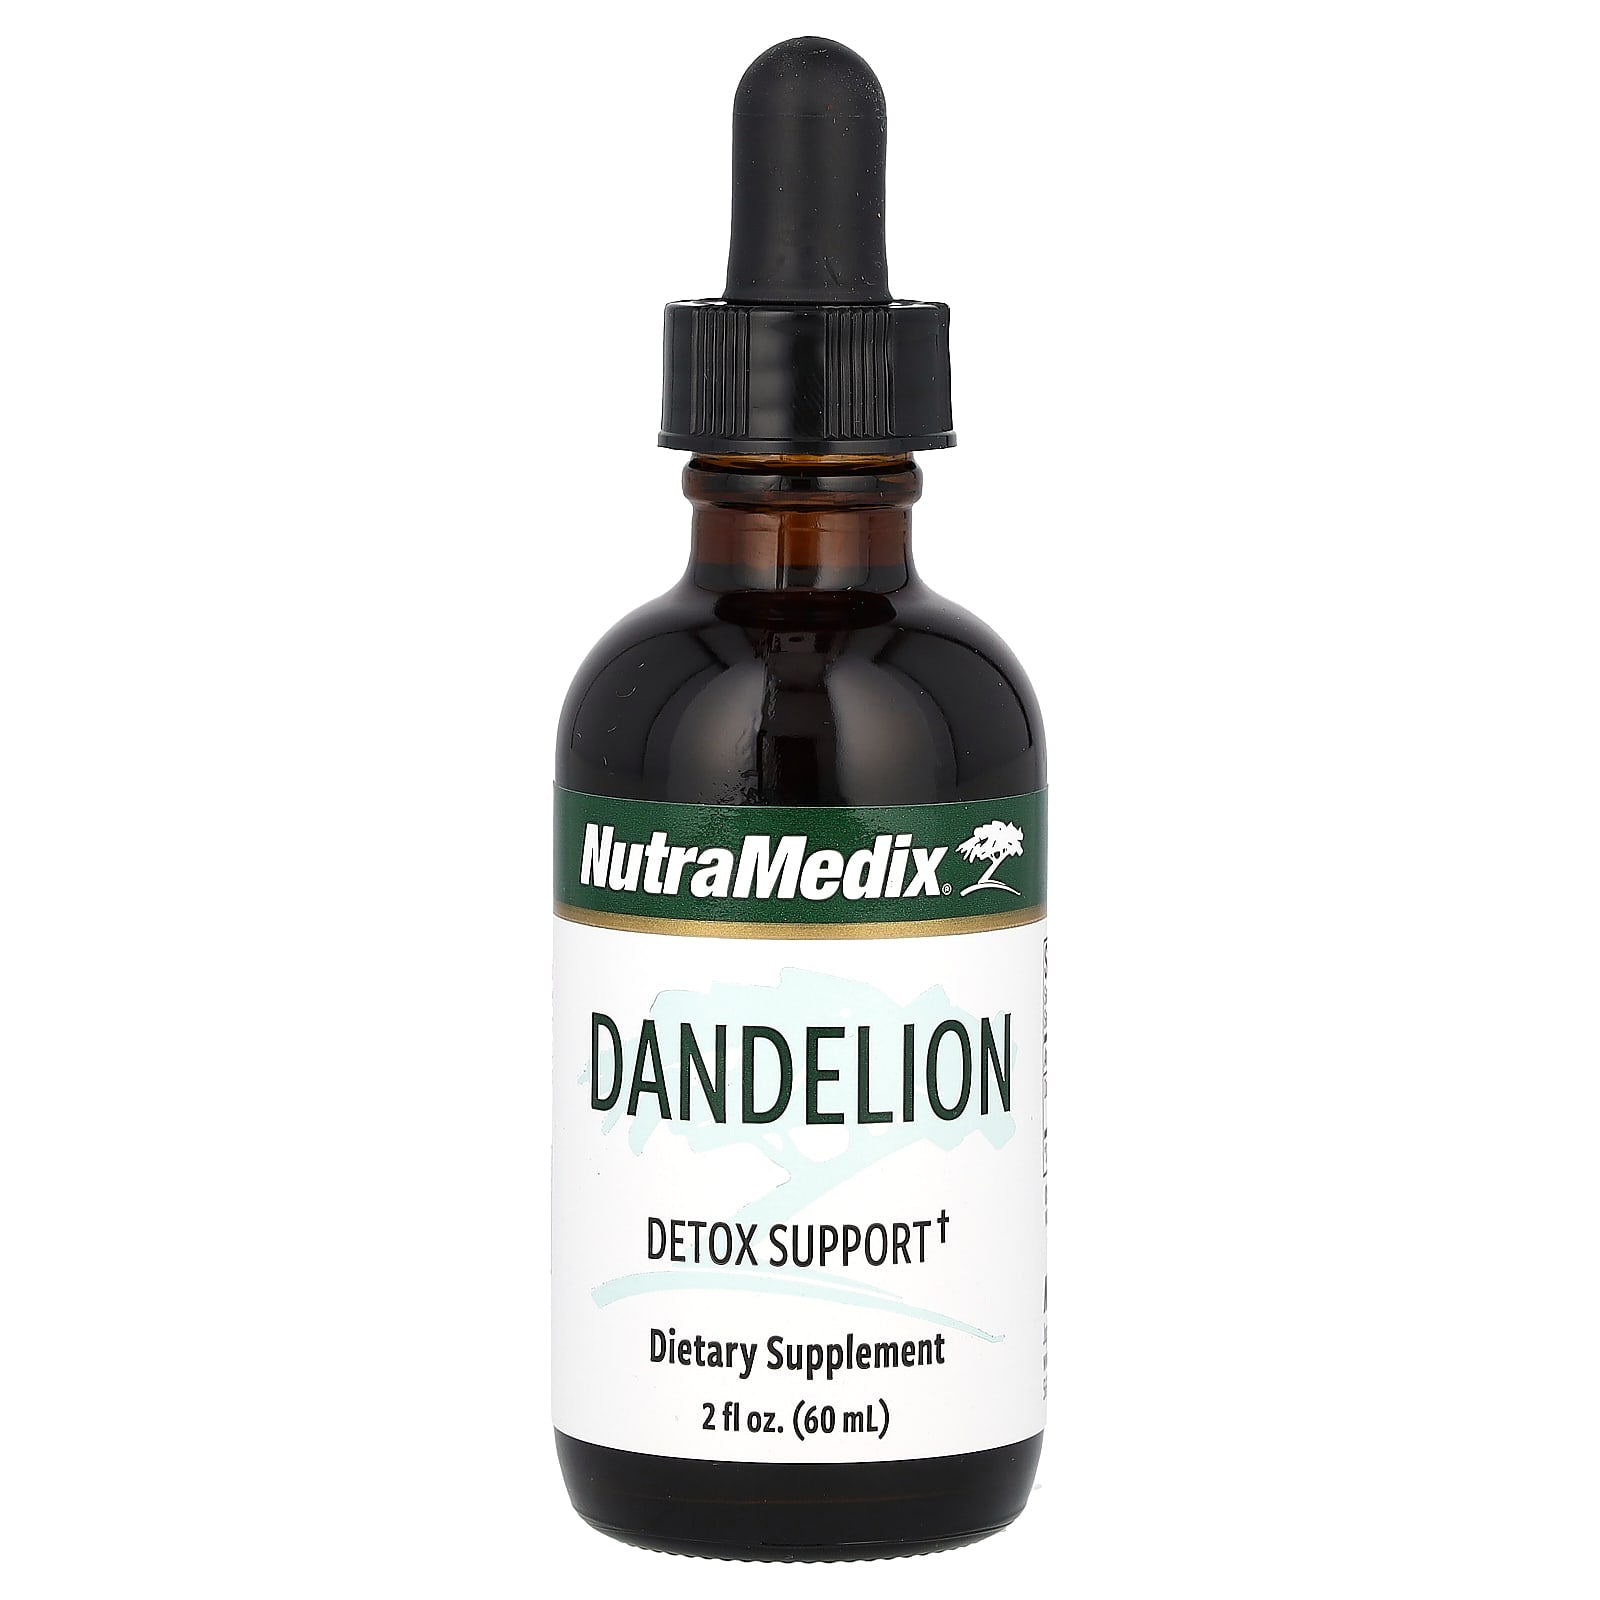 NutraMedix-Dandelion-Detox Support-2 fl oz (60 ml)